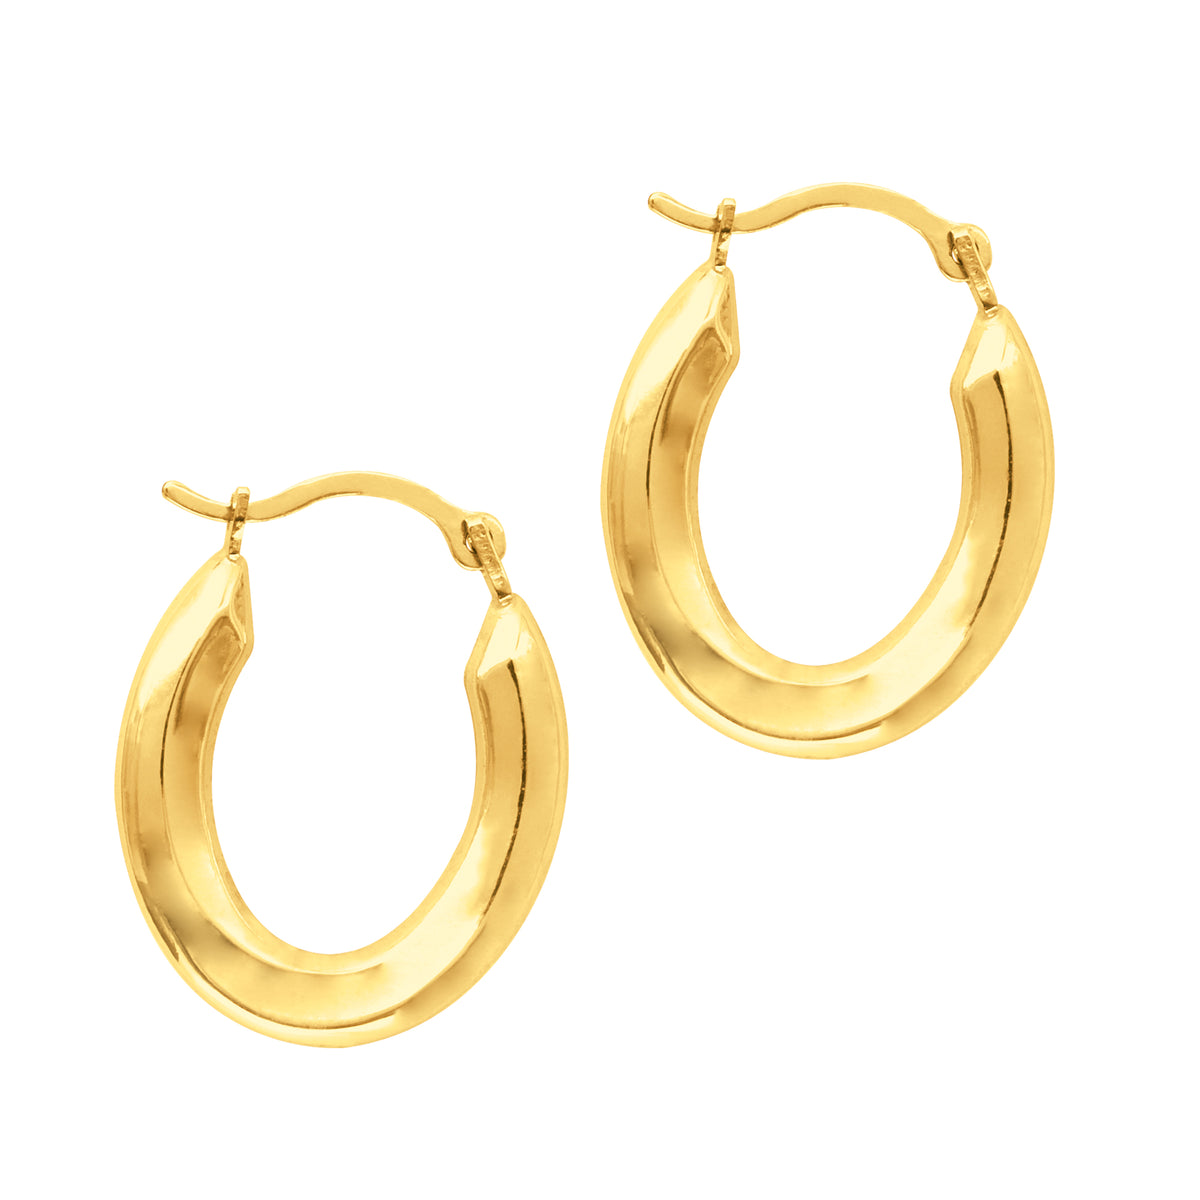 14K Yellow Gold Oval Shape Hoop Earrings, Diameter 20mm